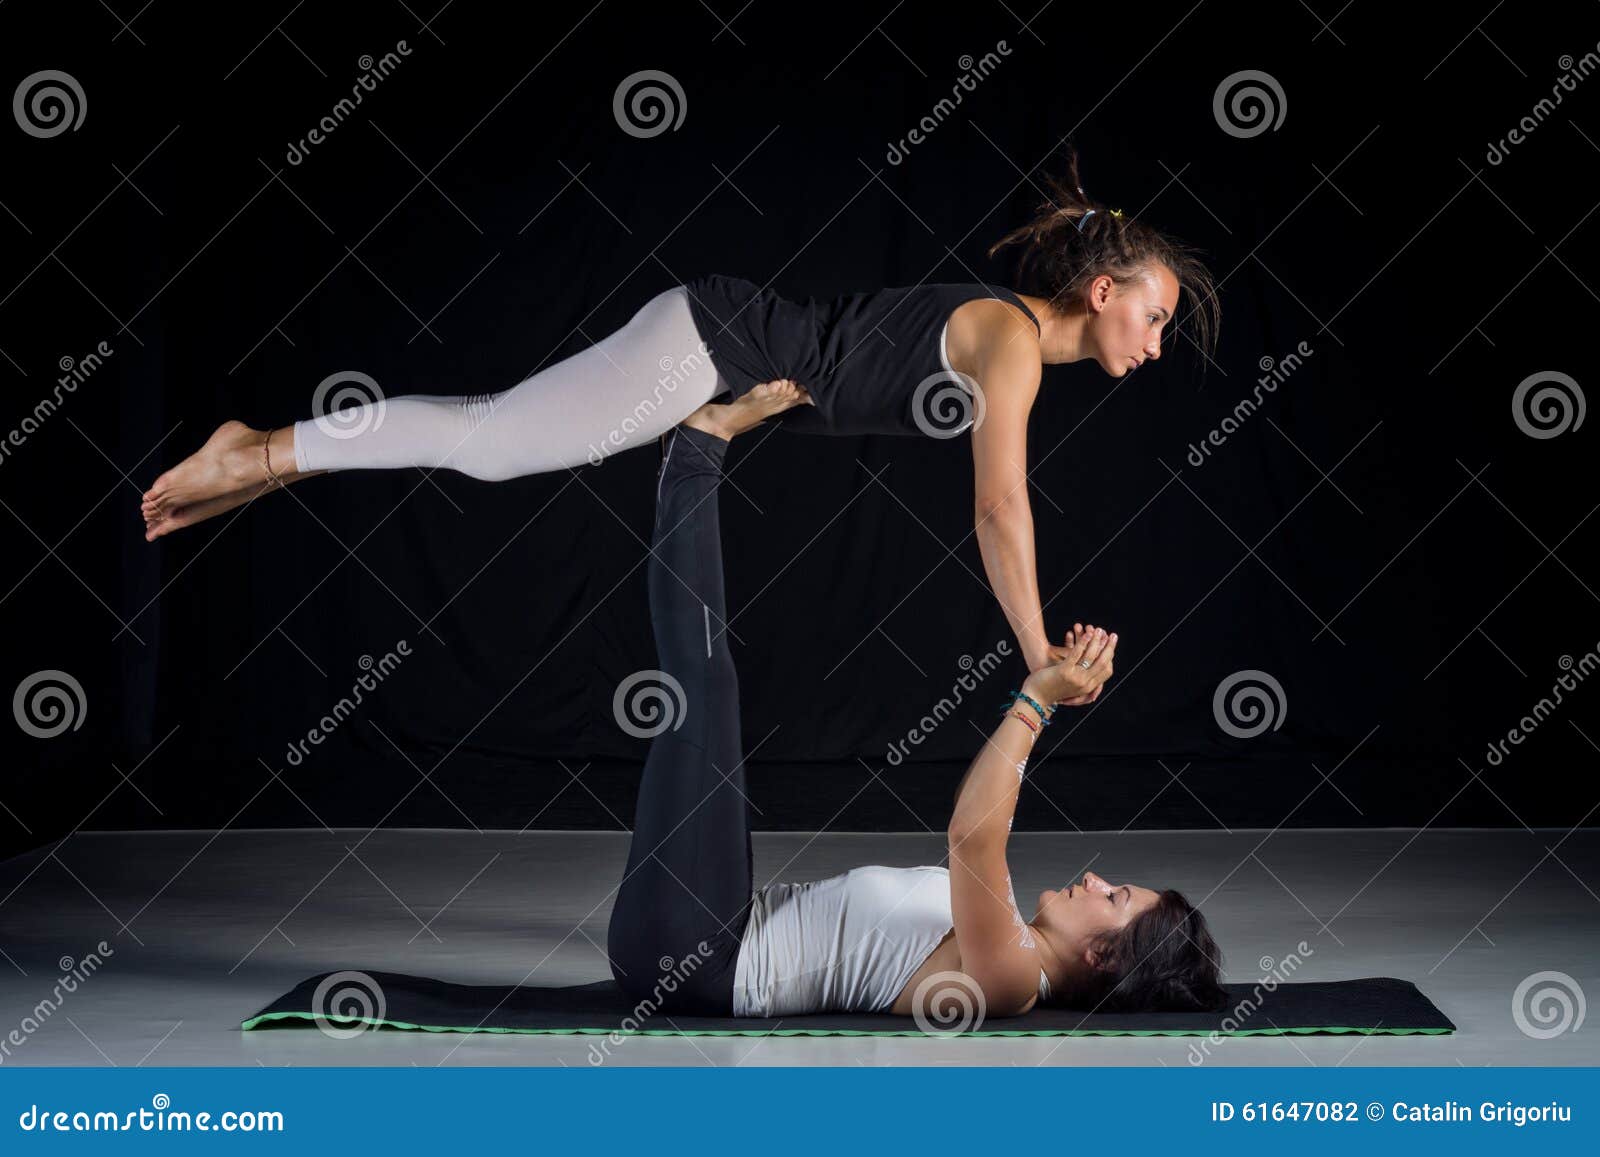 Partner Yoga | Two Person Yoga | Santorini Greece | Acro Yoga | Beginner  Teen Yoga Challenge - YouTube